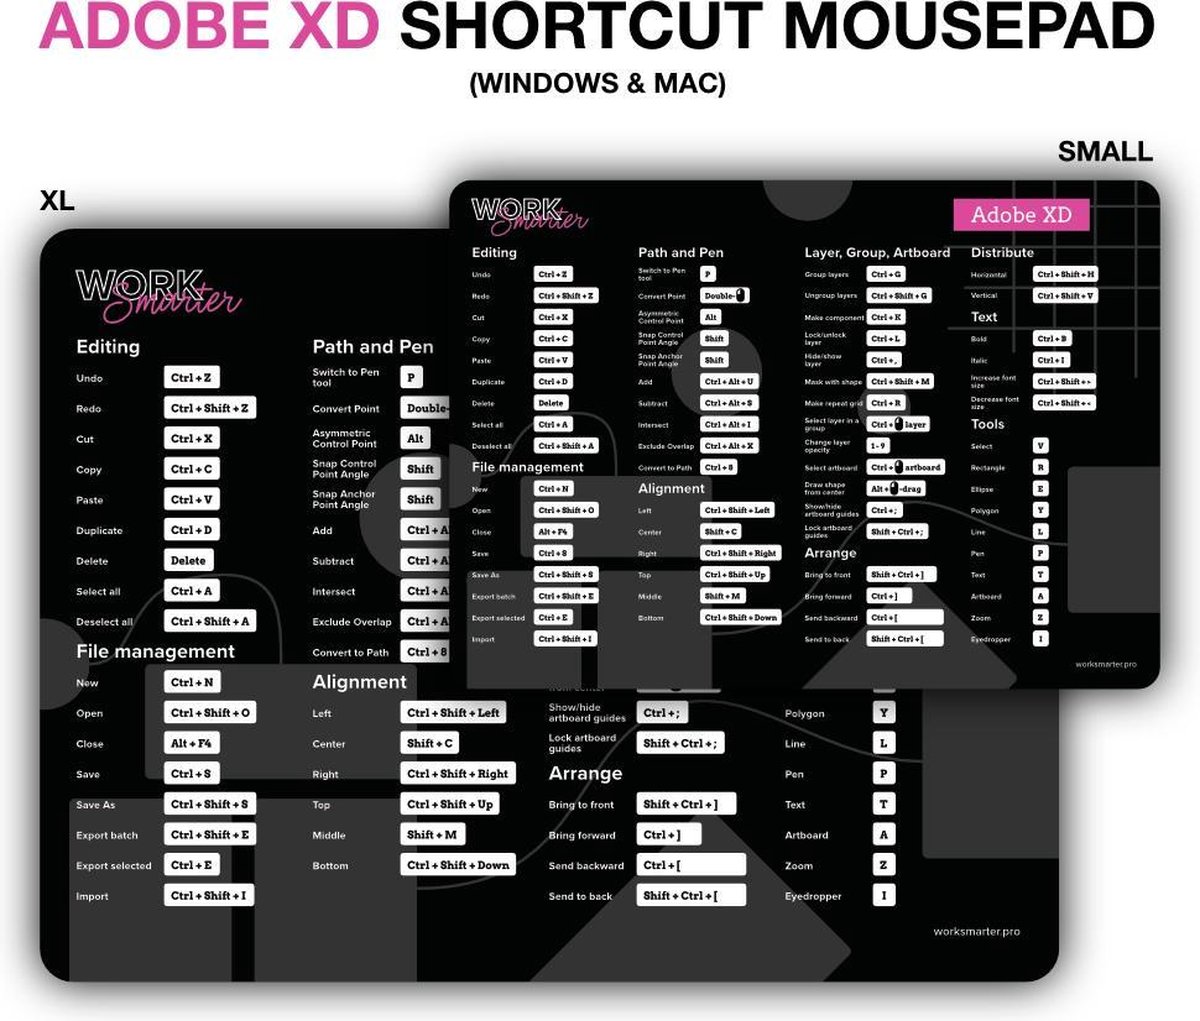 Adobe XD Shortcut Mousepad - XL - Mac